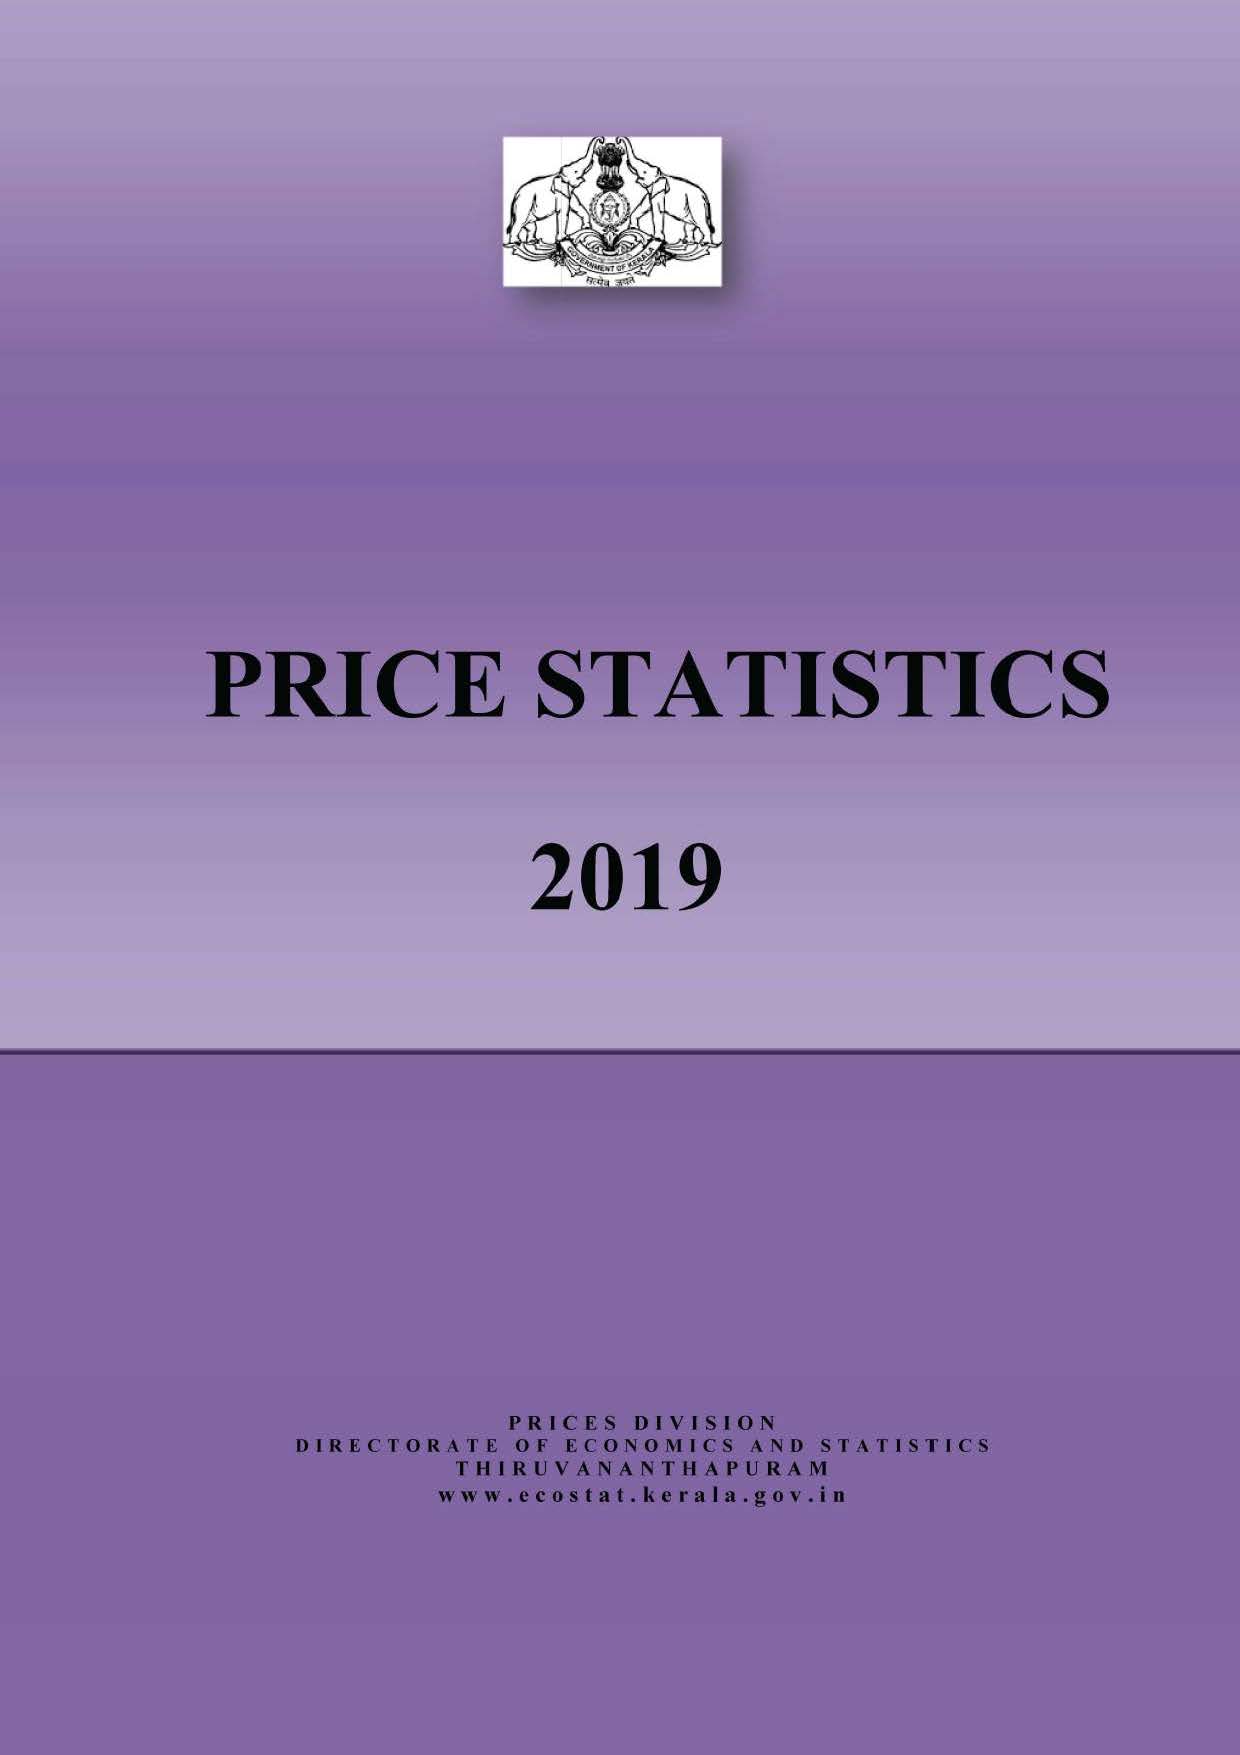 Price statistics 2019